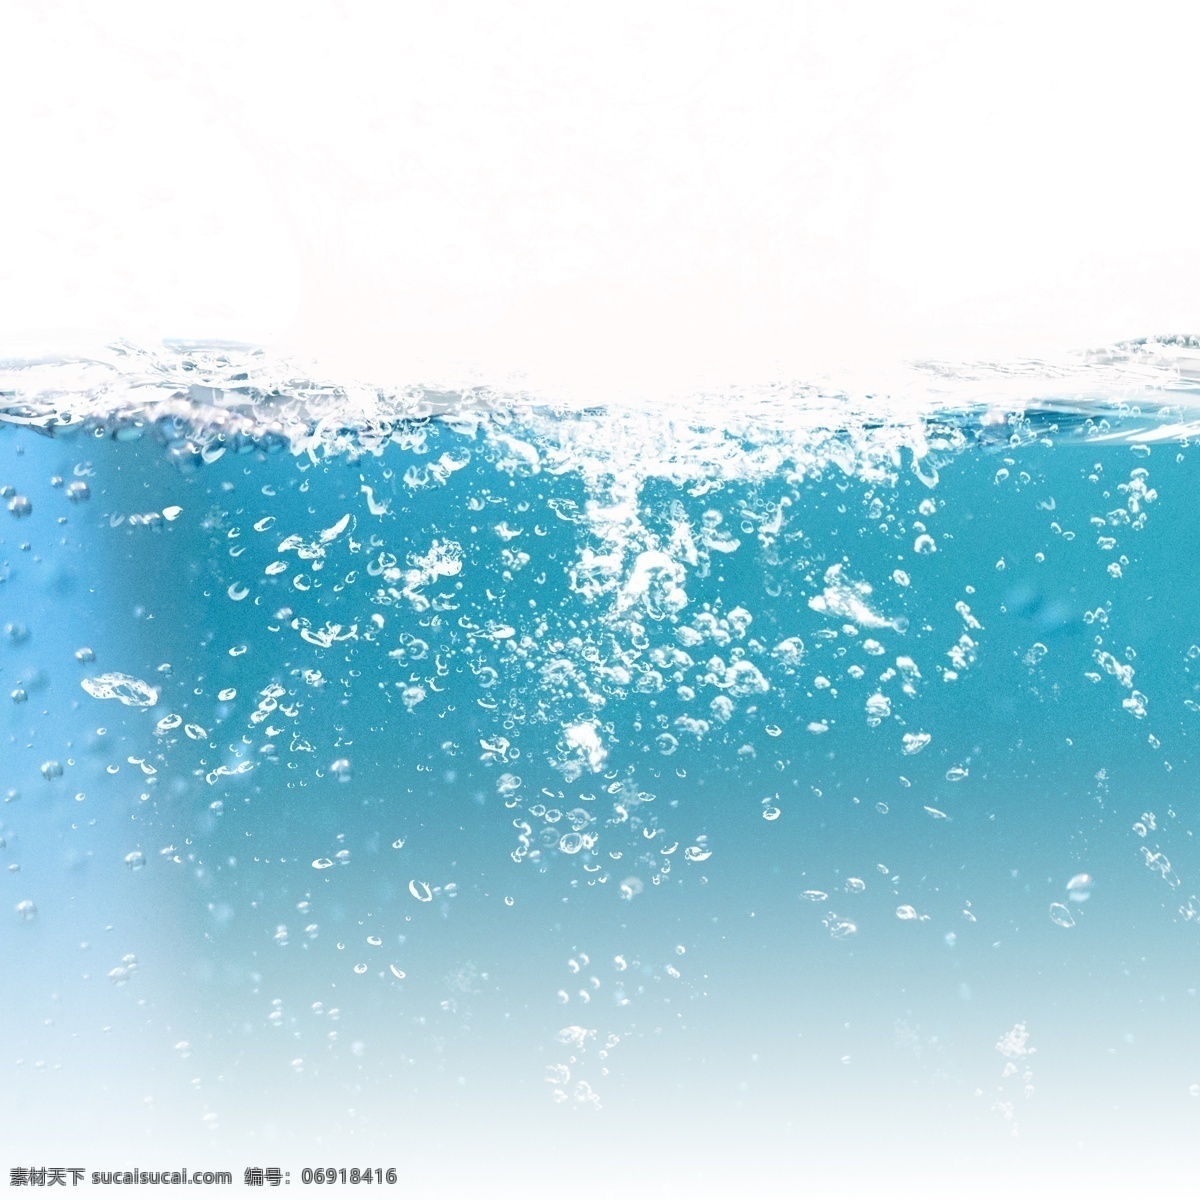 动感 水 纹 波浪 元素 水纹 蓝色 水花 水波纹 水滴 动感水 动感水浪 动感水纹 飞溅 水圈 喷溅 漂浮的水